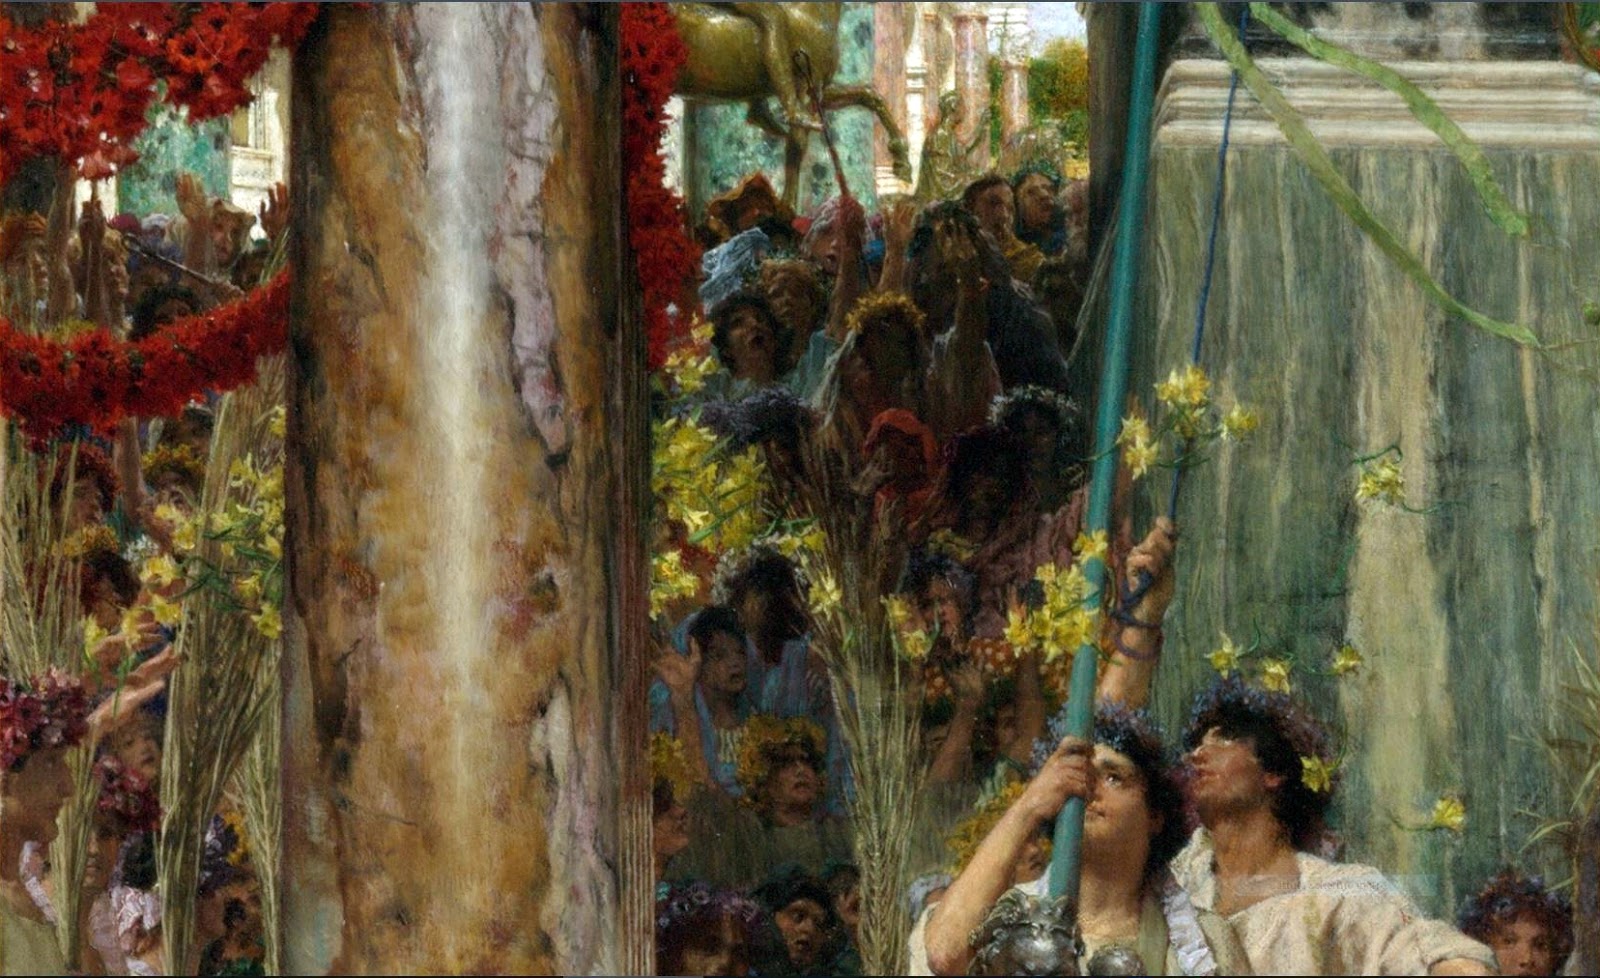 Sir+Lawrence+Alma+Tadema-1836-1912 (72).JPG